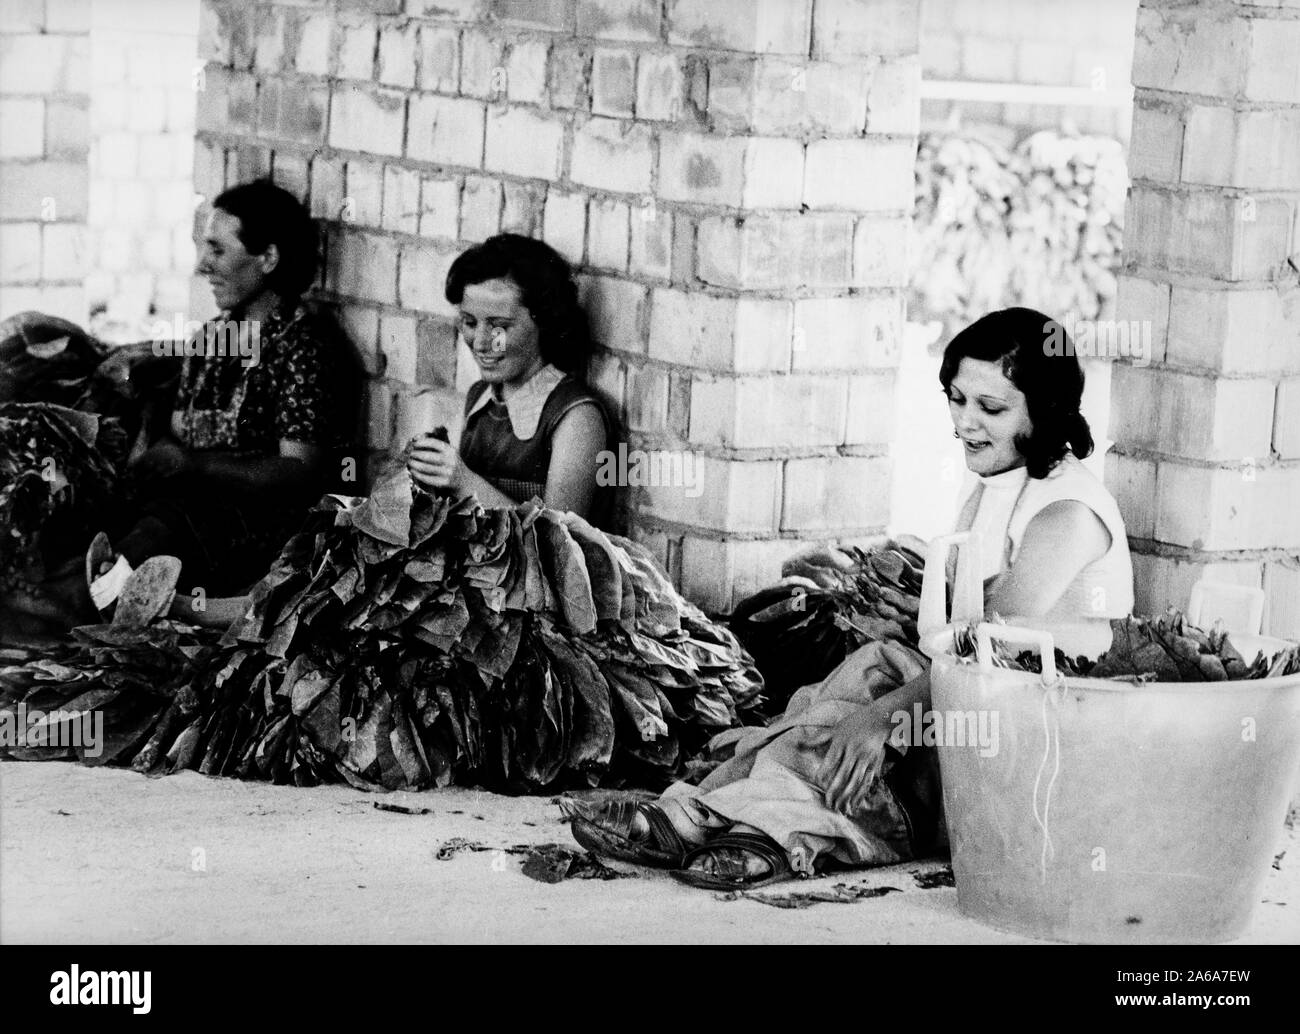 Las mujeres, procesamiento de tabaco, Italia, 60s Foto de stock